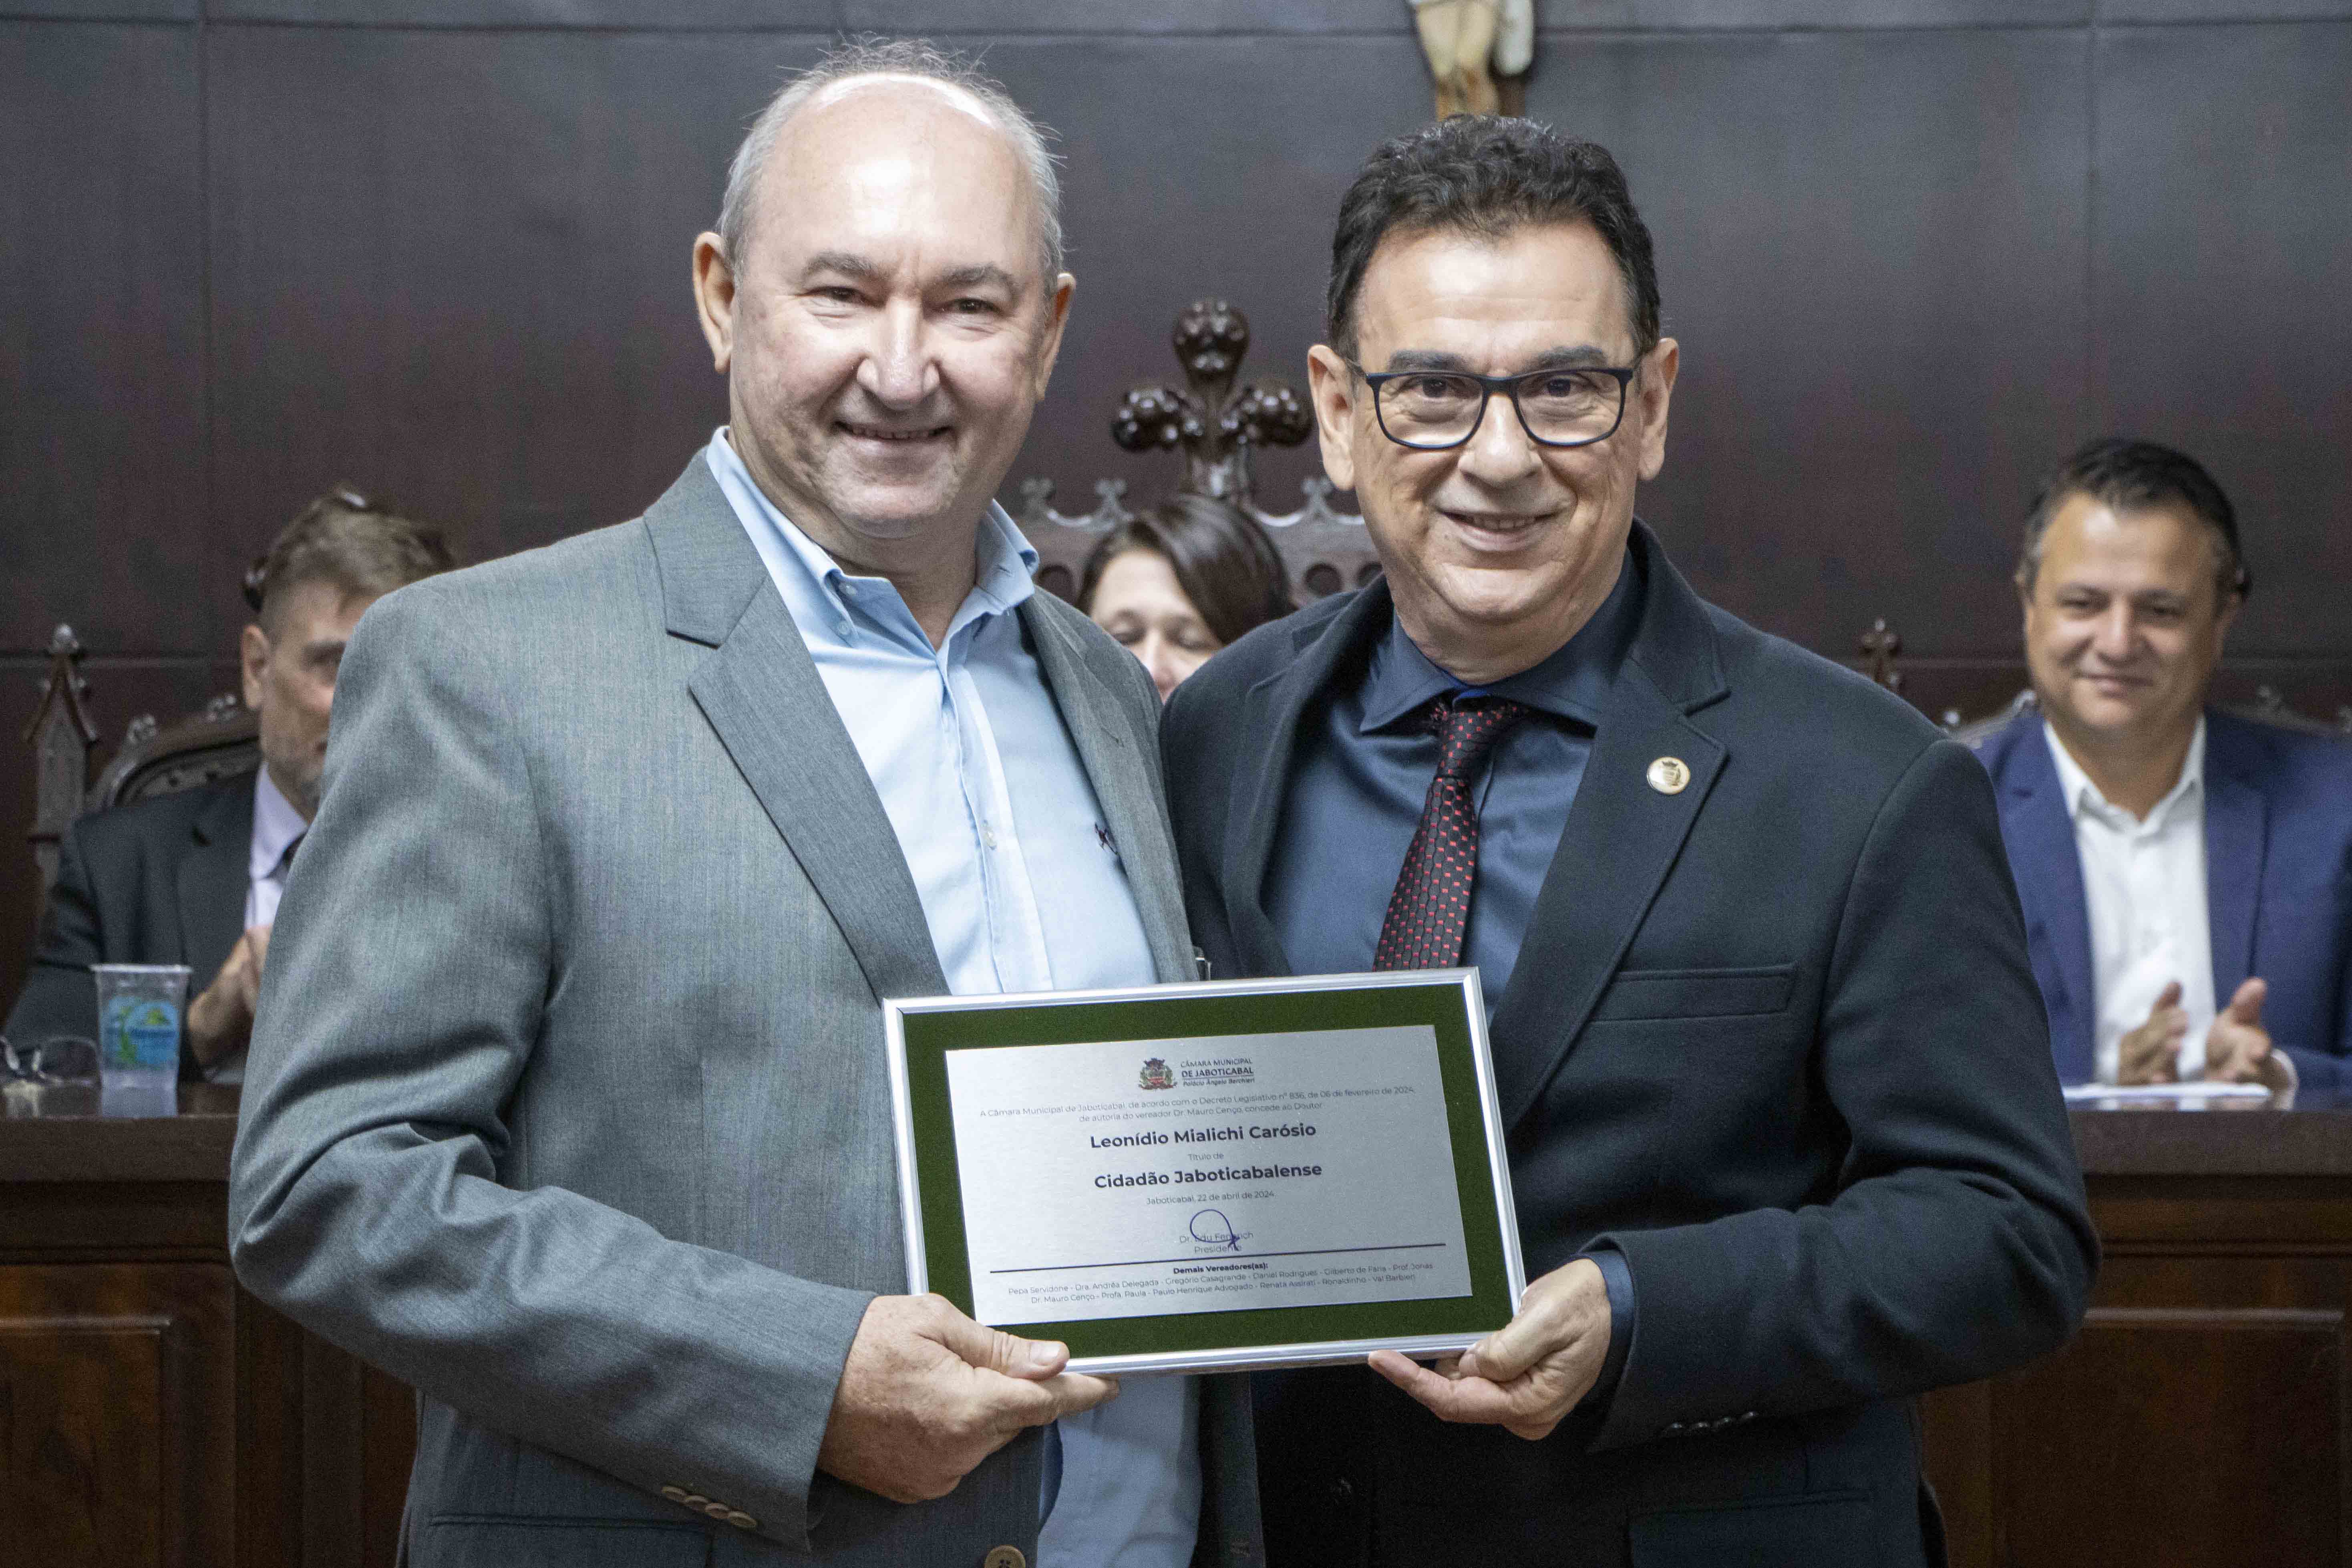 Dr. Leonídio Carósio recebe título de Cidadão Jaboticabalense